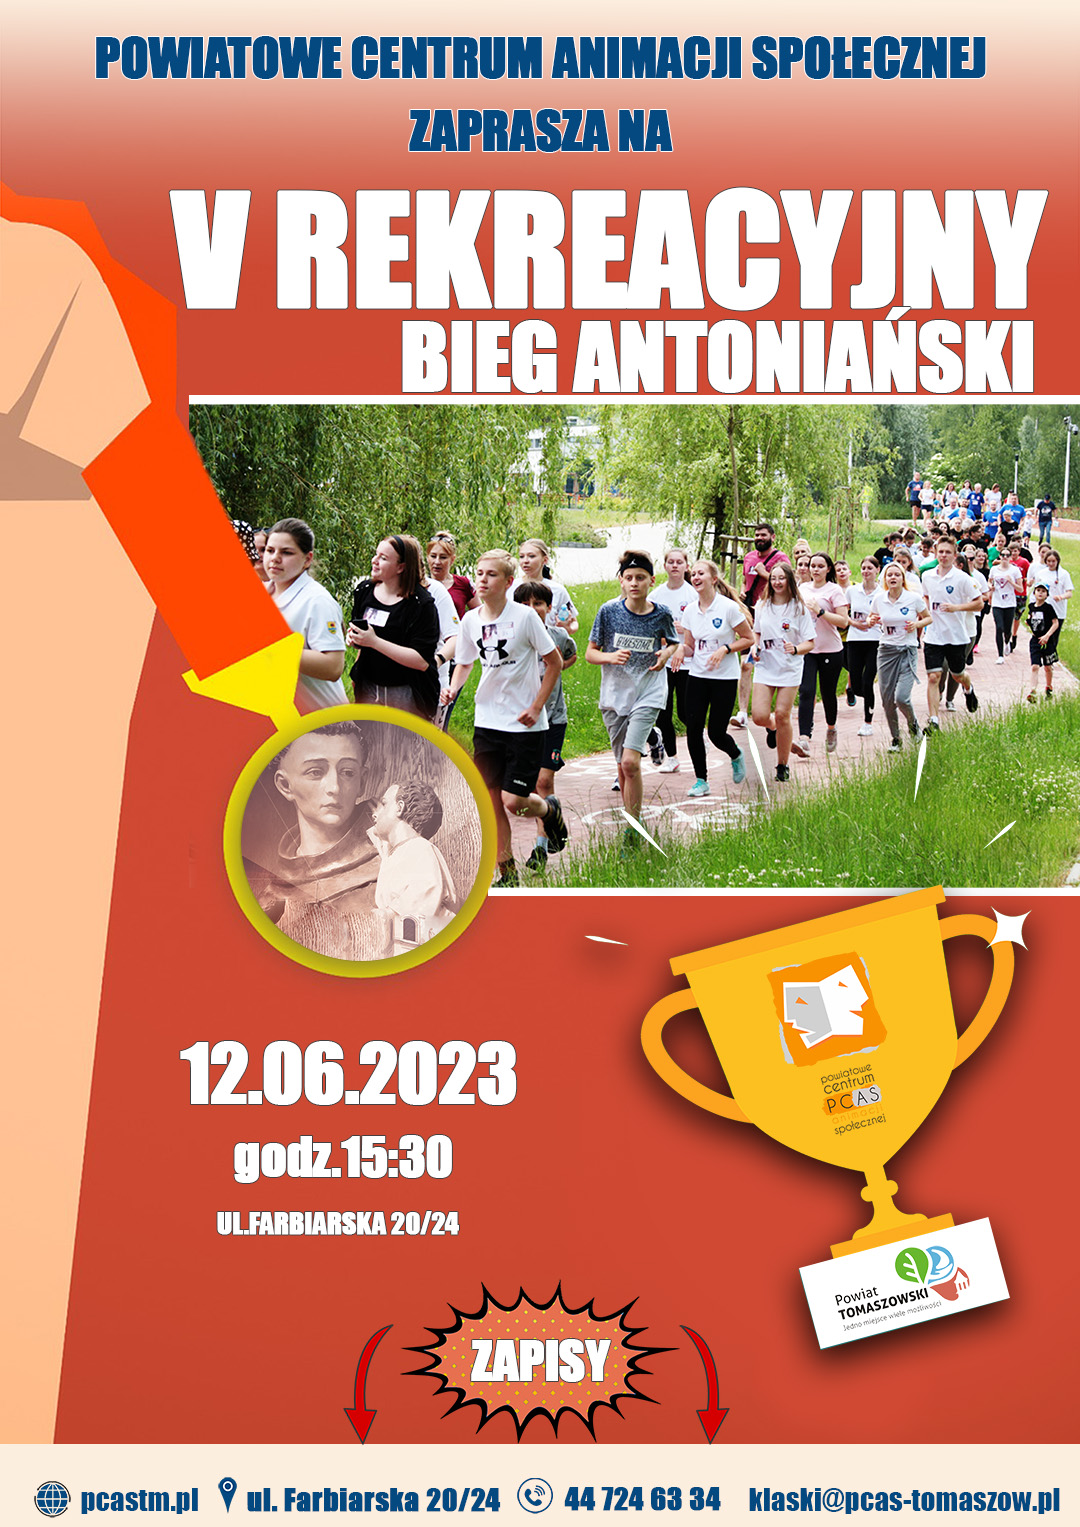 Na zdjęciu: plakat PCAS reklamujący V Antoniański Bieg Rekreacyjny, który odbędzie się 12 czerwca 2023 roku o godzinie 15.30 na boiskach PCAS-u przy ul. Farbiarskiej 20/24 w Tomaszowie Mazowieckim